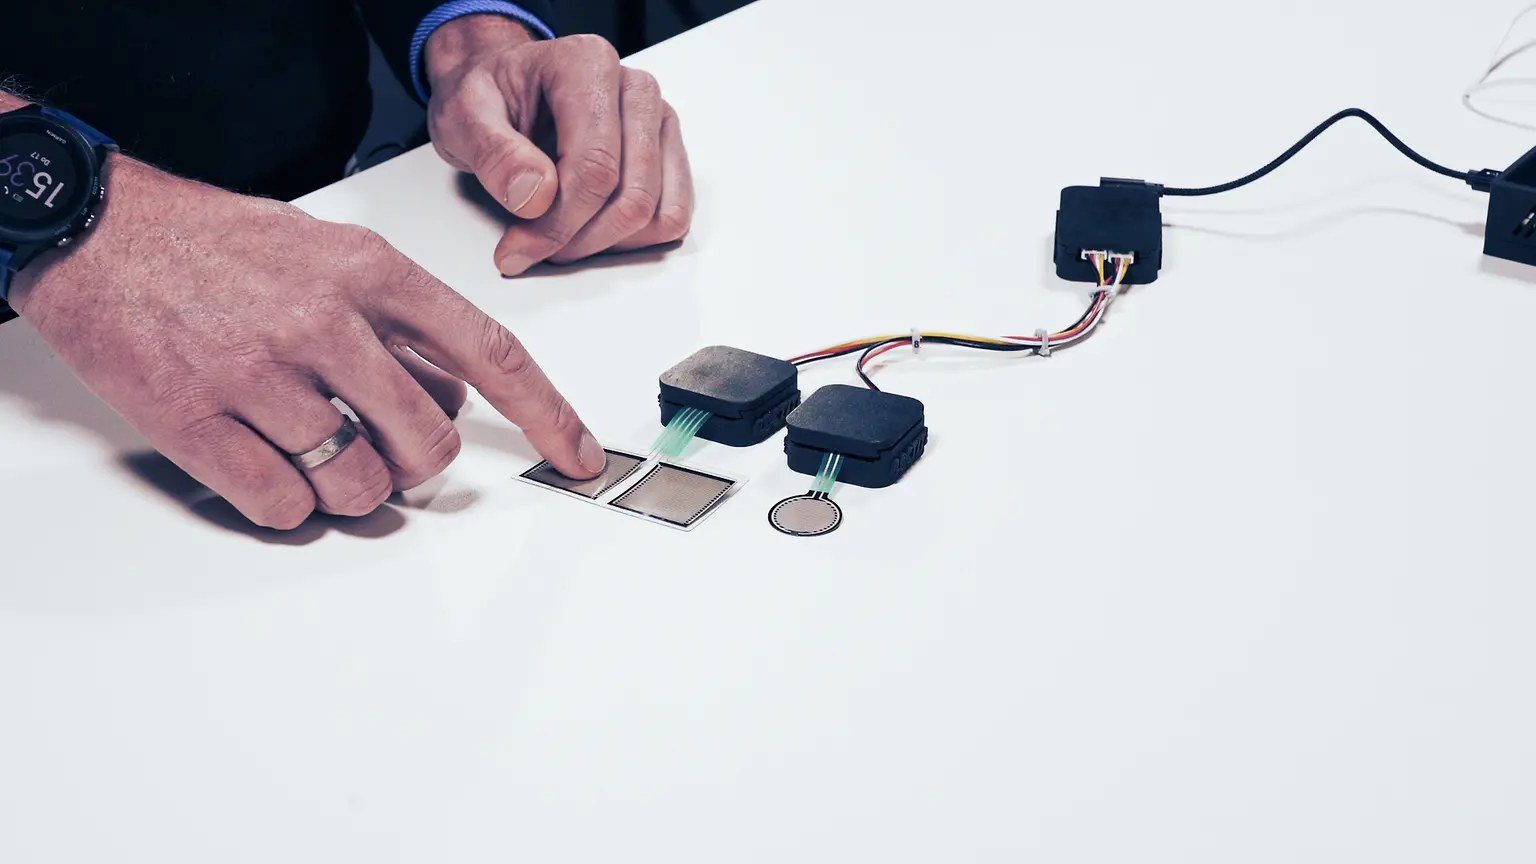 
Das Sensor INKxperience Kit bietet IoT-Ingenieuren die Möglichkeit, die Potenziale von gedruckter Elektronik für die Entwicklung neuer Sensorlösungen zu erforschen und zu testen.